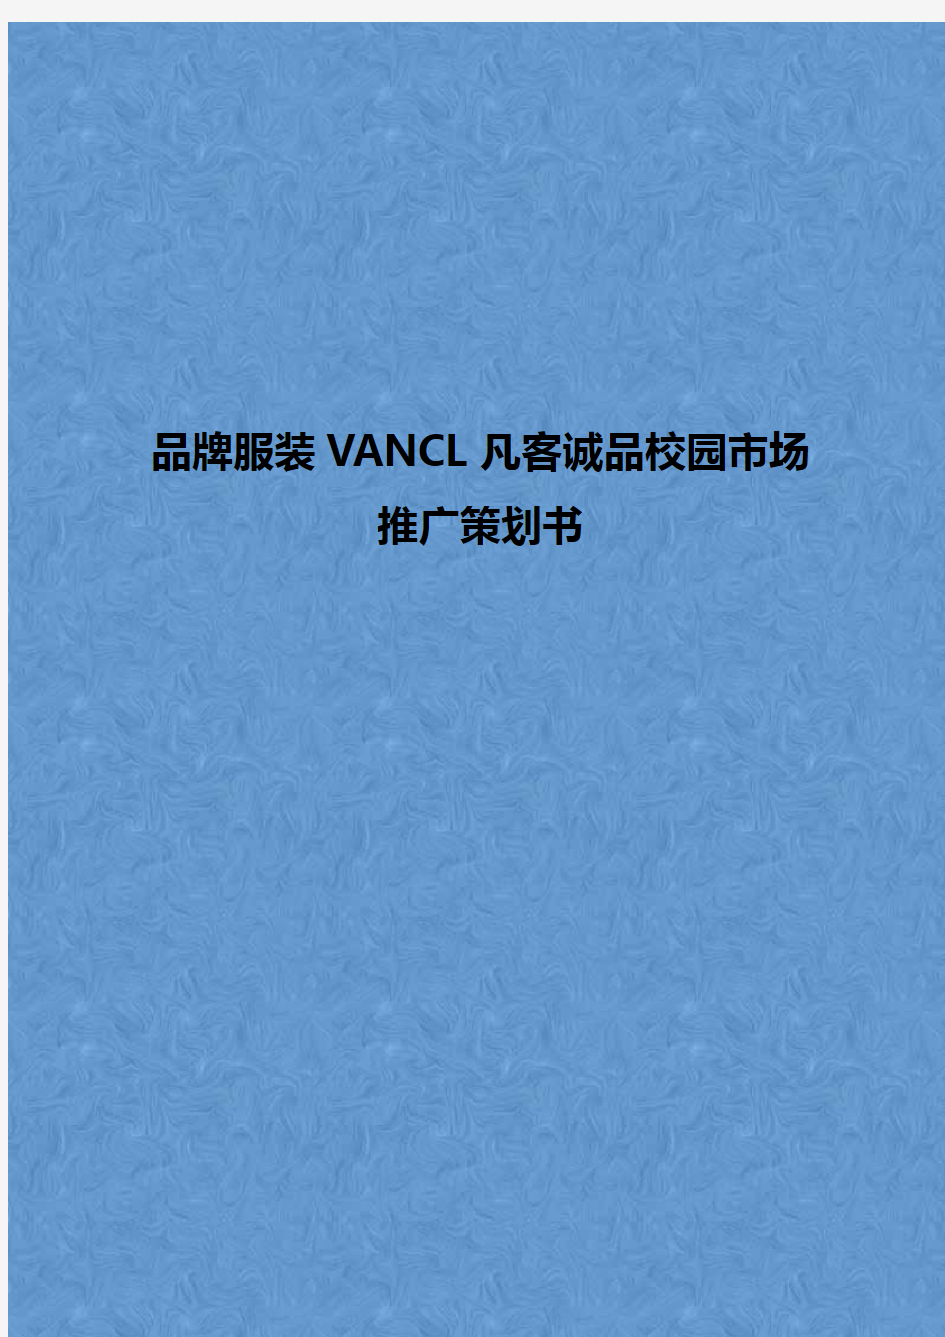 品牌服装VANCL凡客诚品校园市场推广营销策划书【精选申报稿】